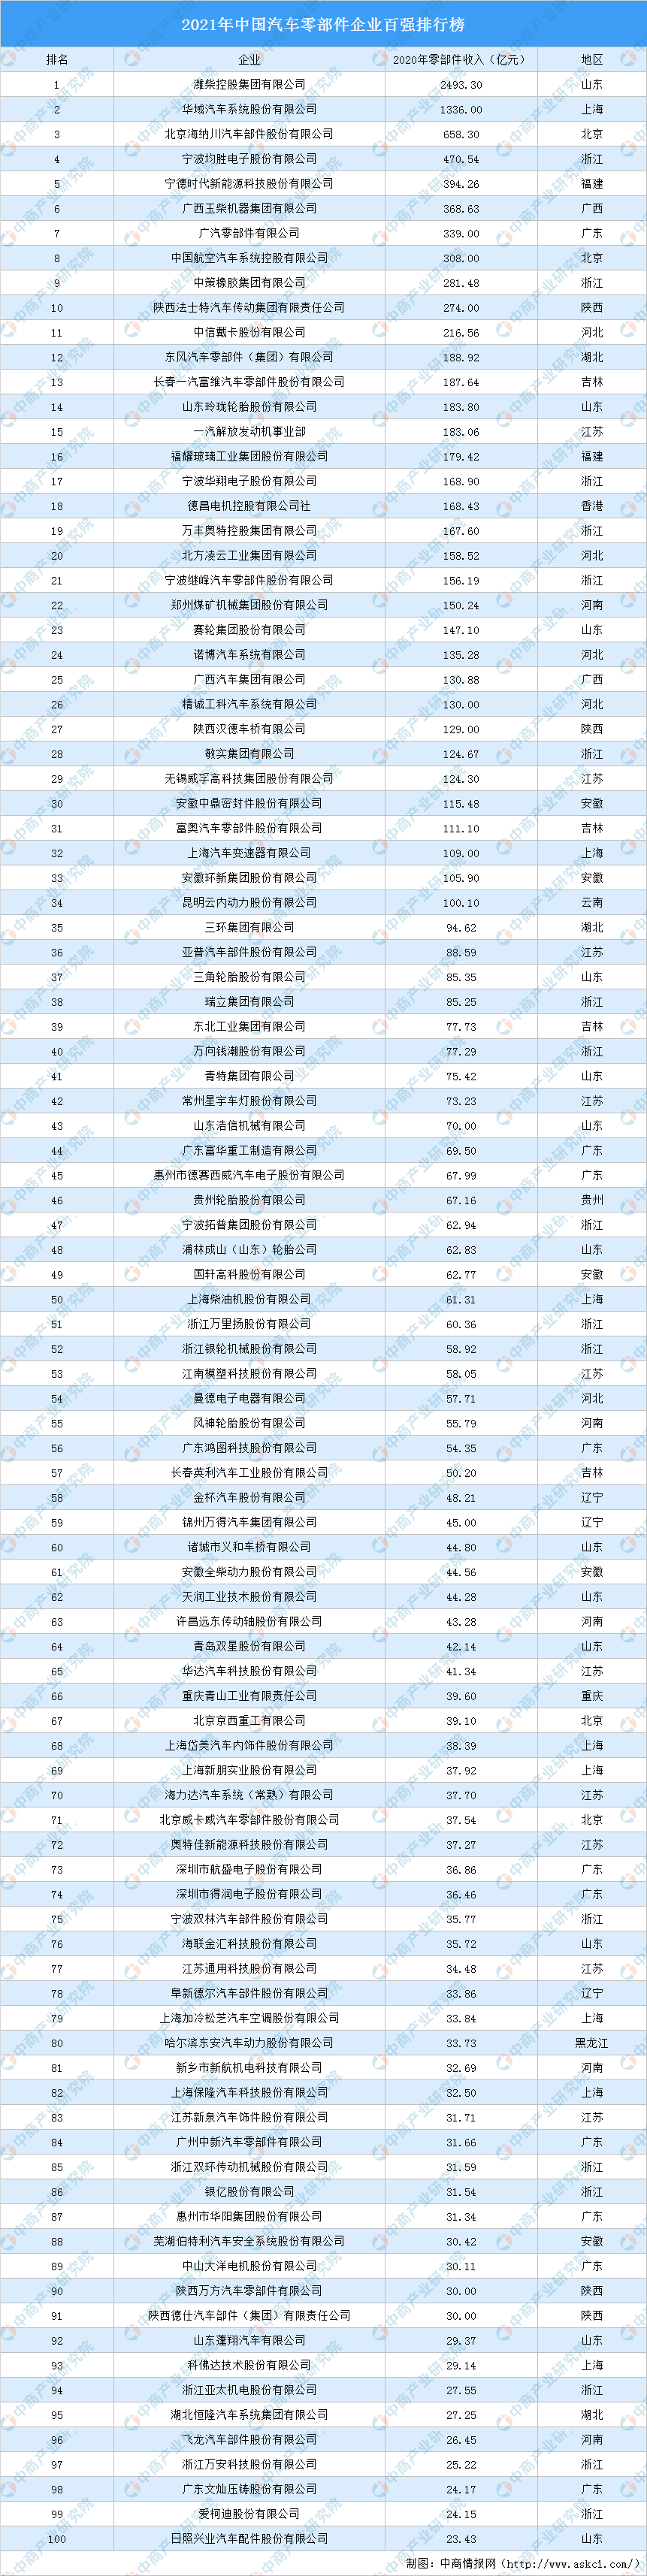 汽车配件排行榜_2021年中国汽车零部件企业百强排行榜(附完整榜单)